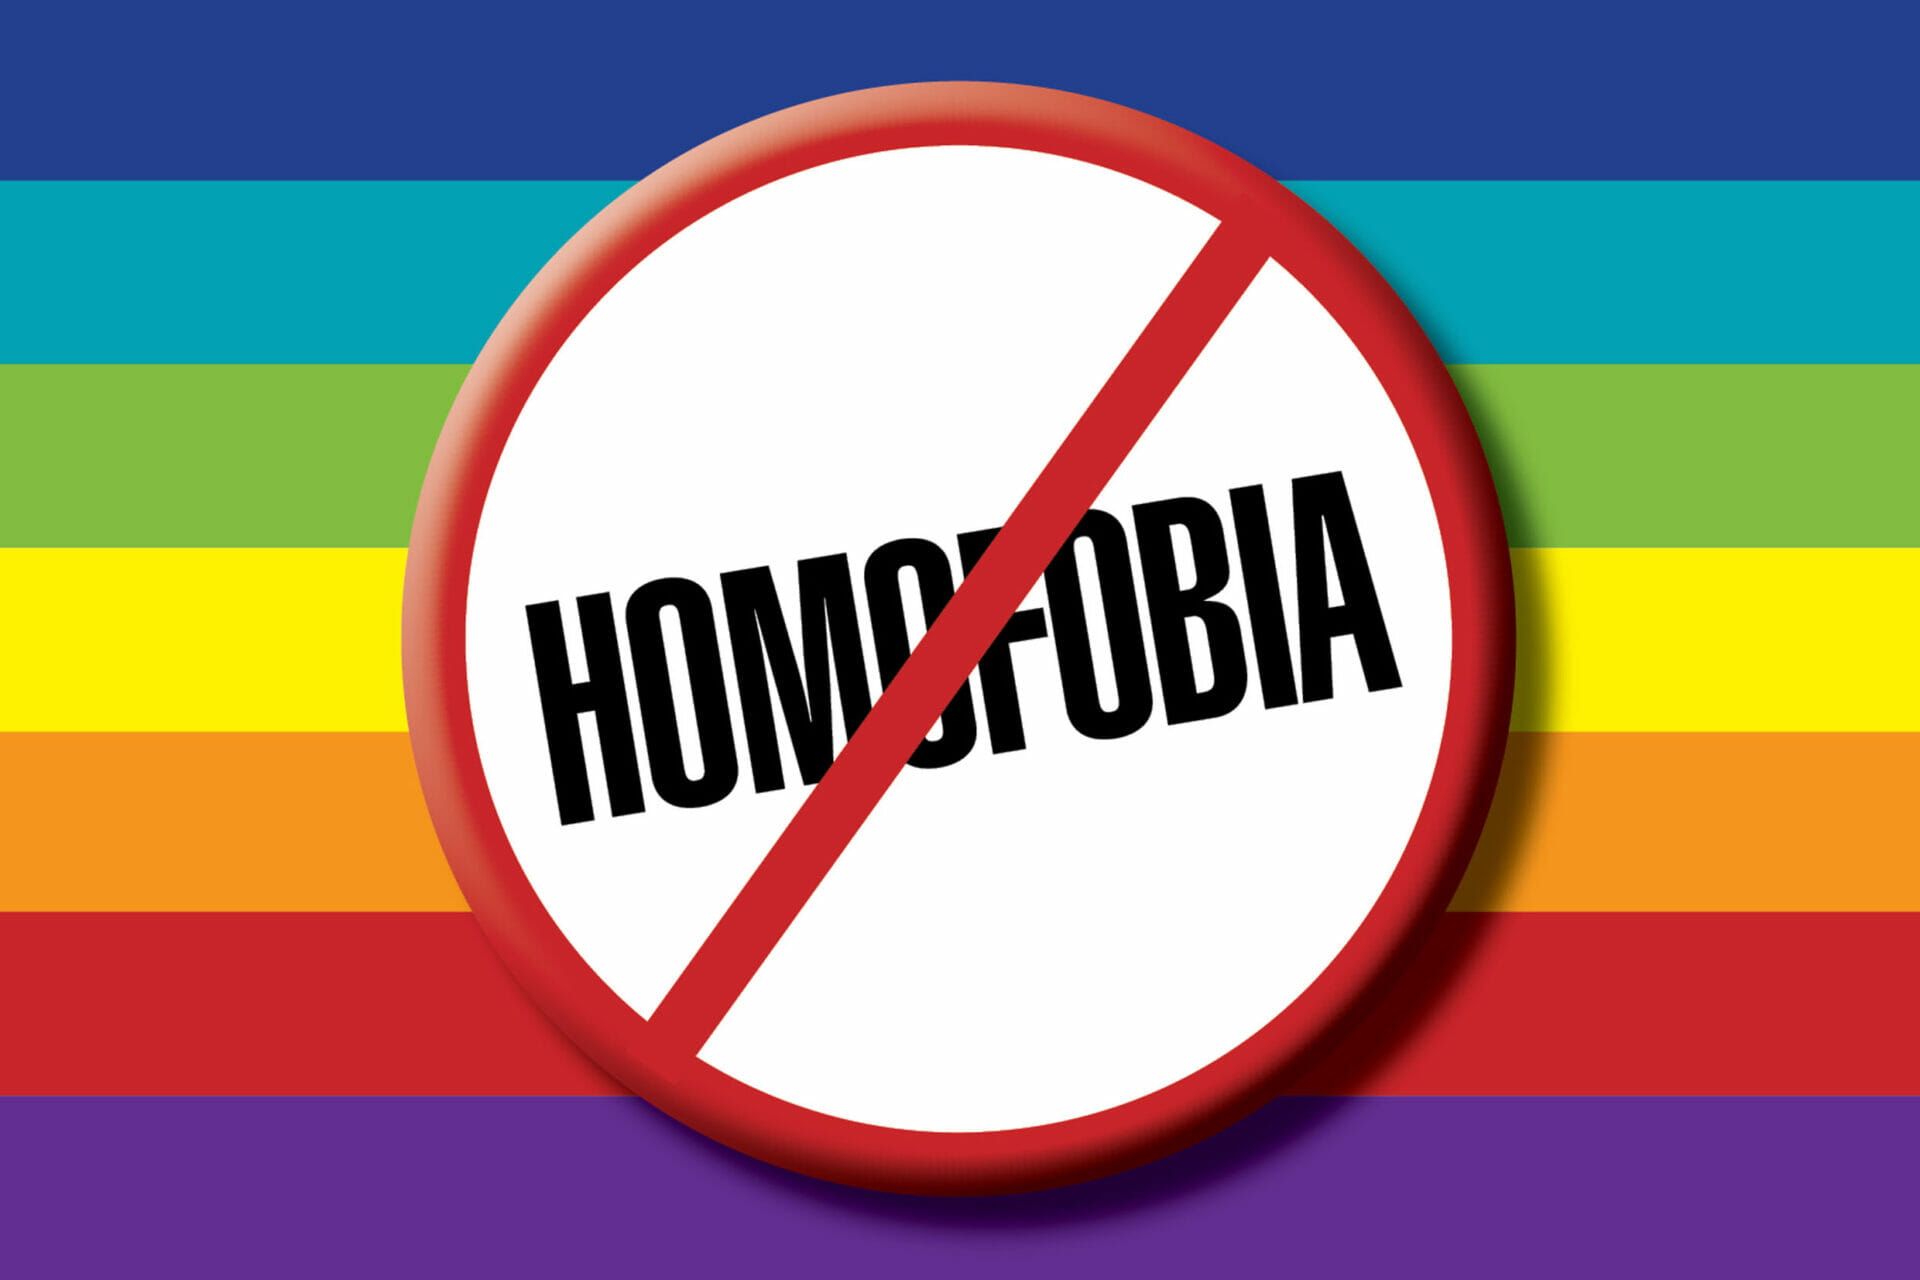 Diga não a homofobia